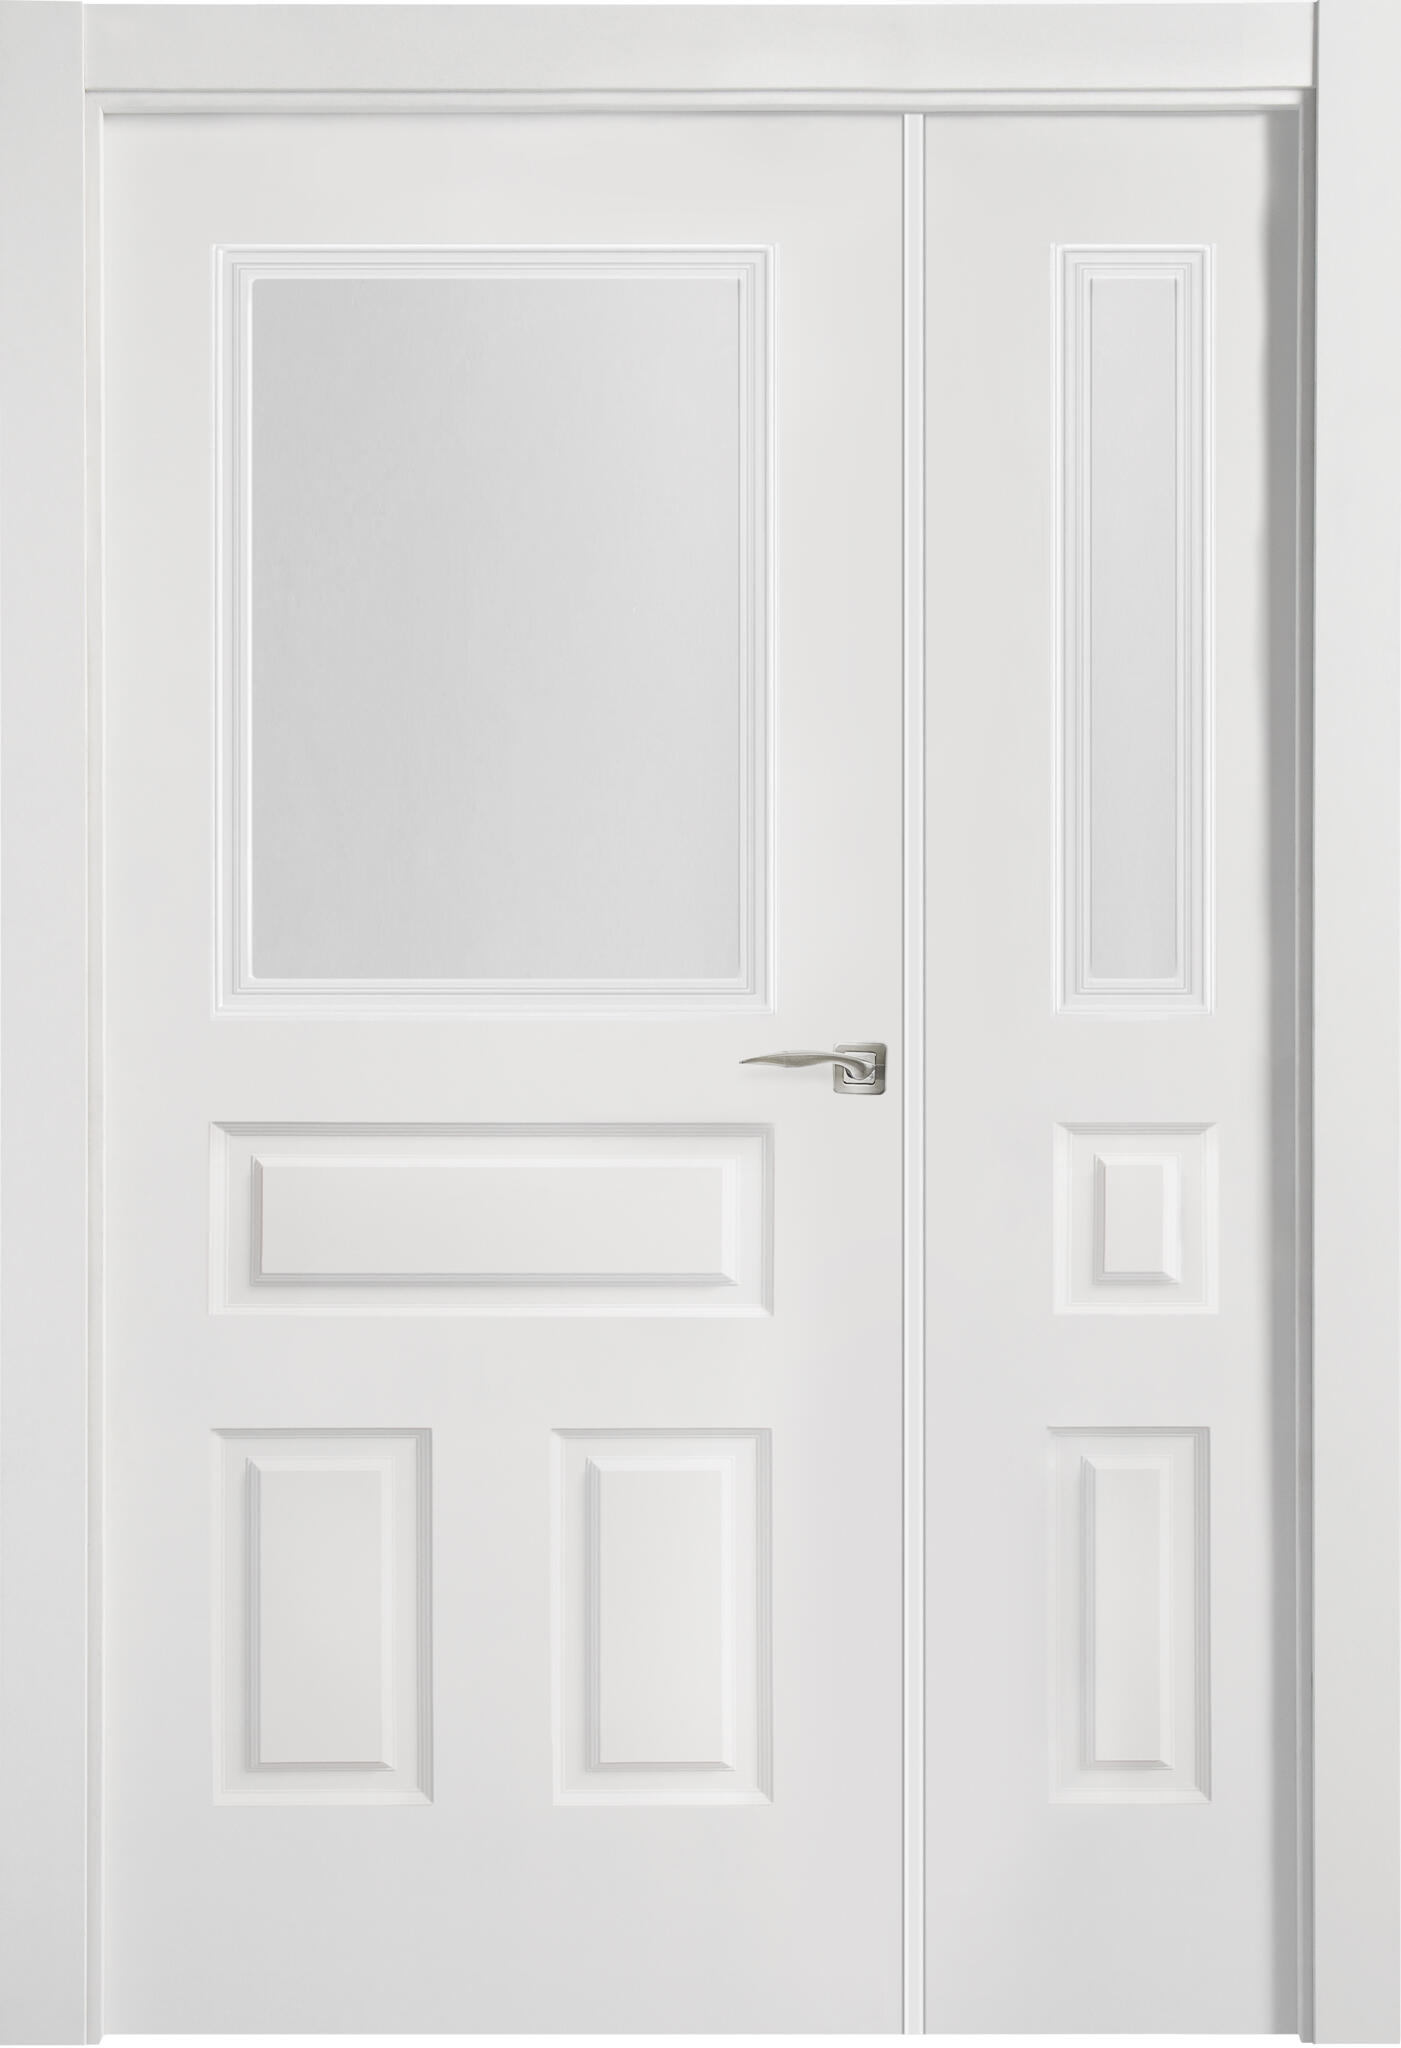 Puerta indiana plus blanco apertura izquierda con cristal 11x125 cm